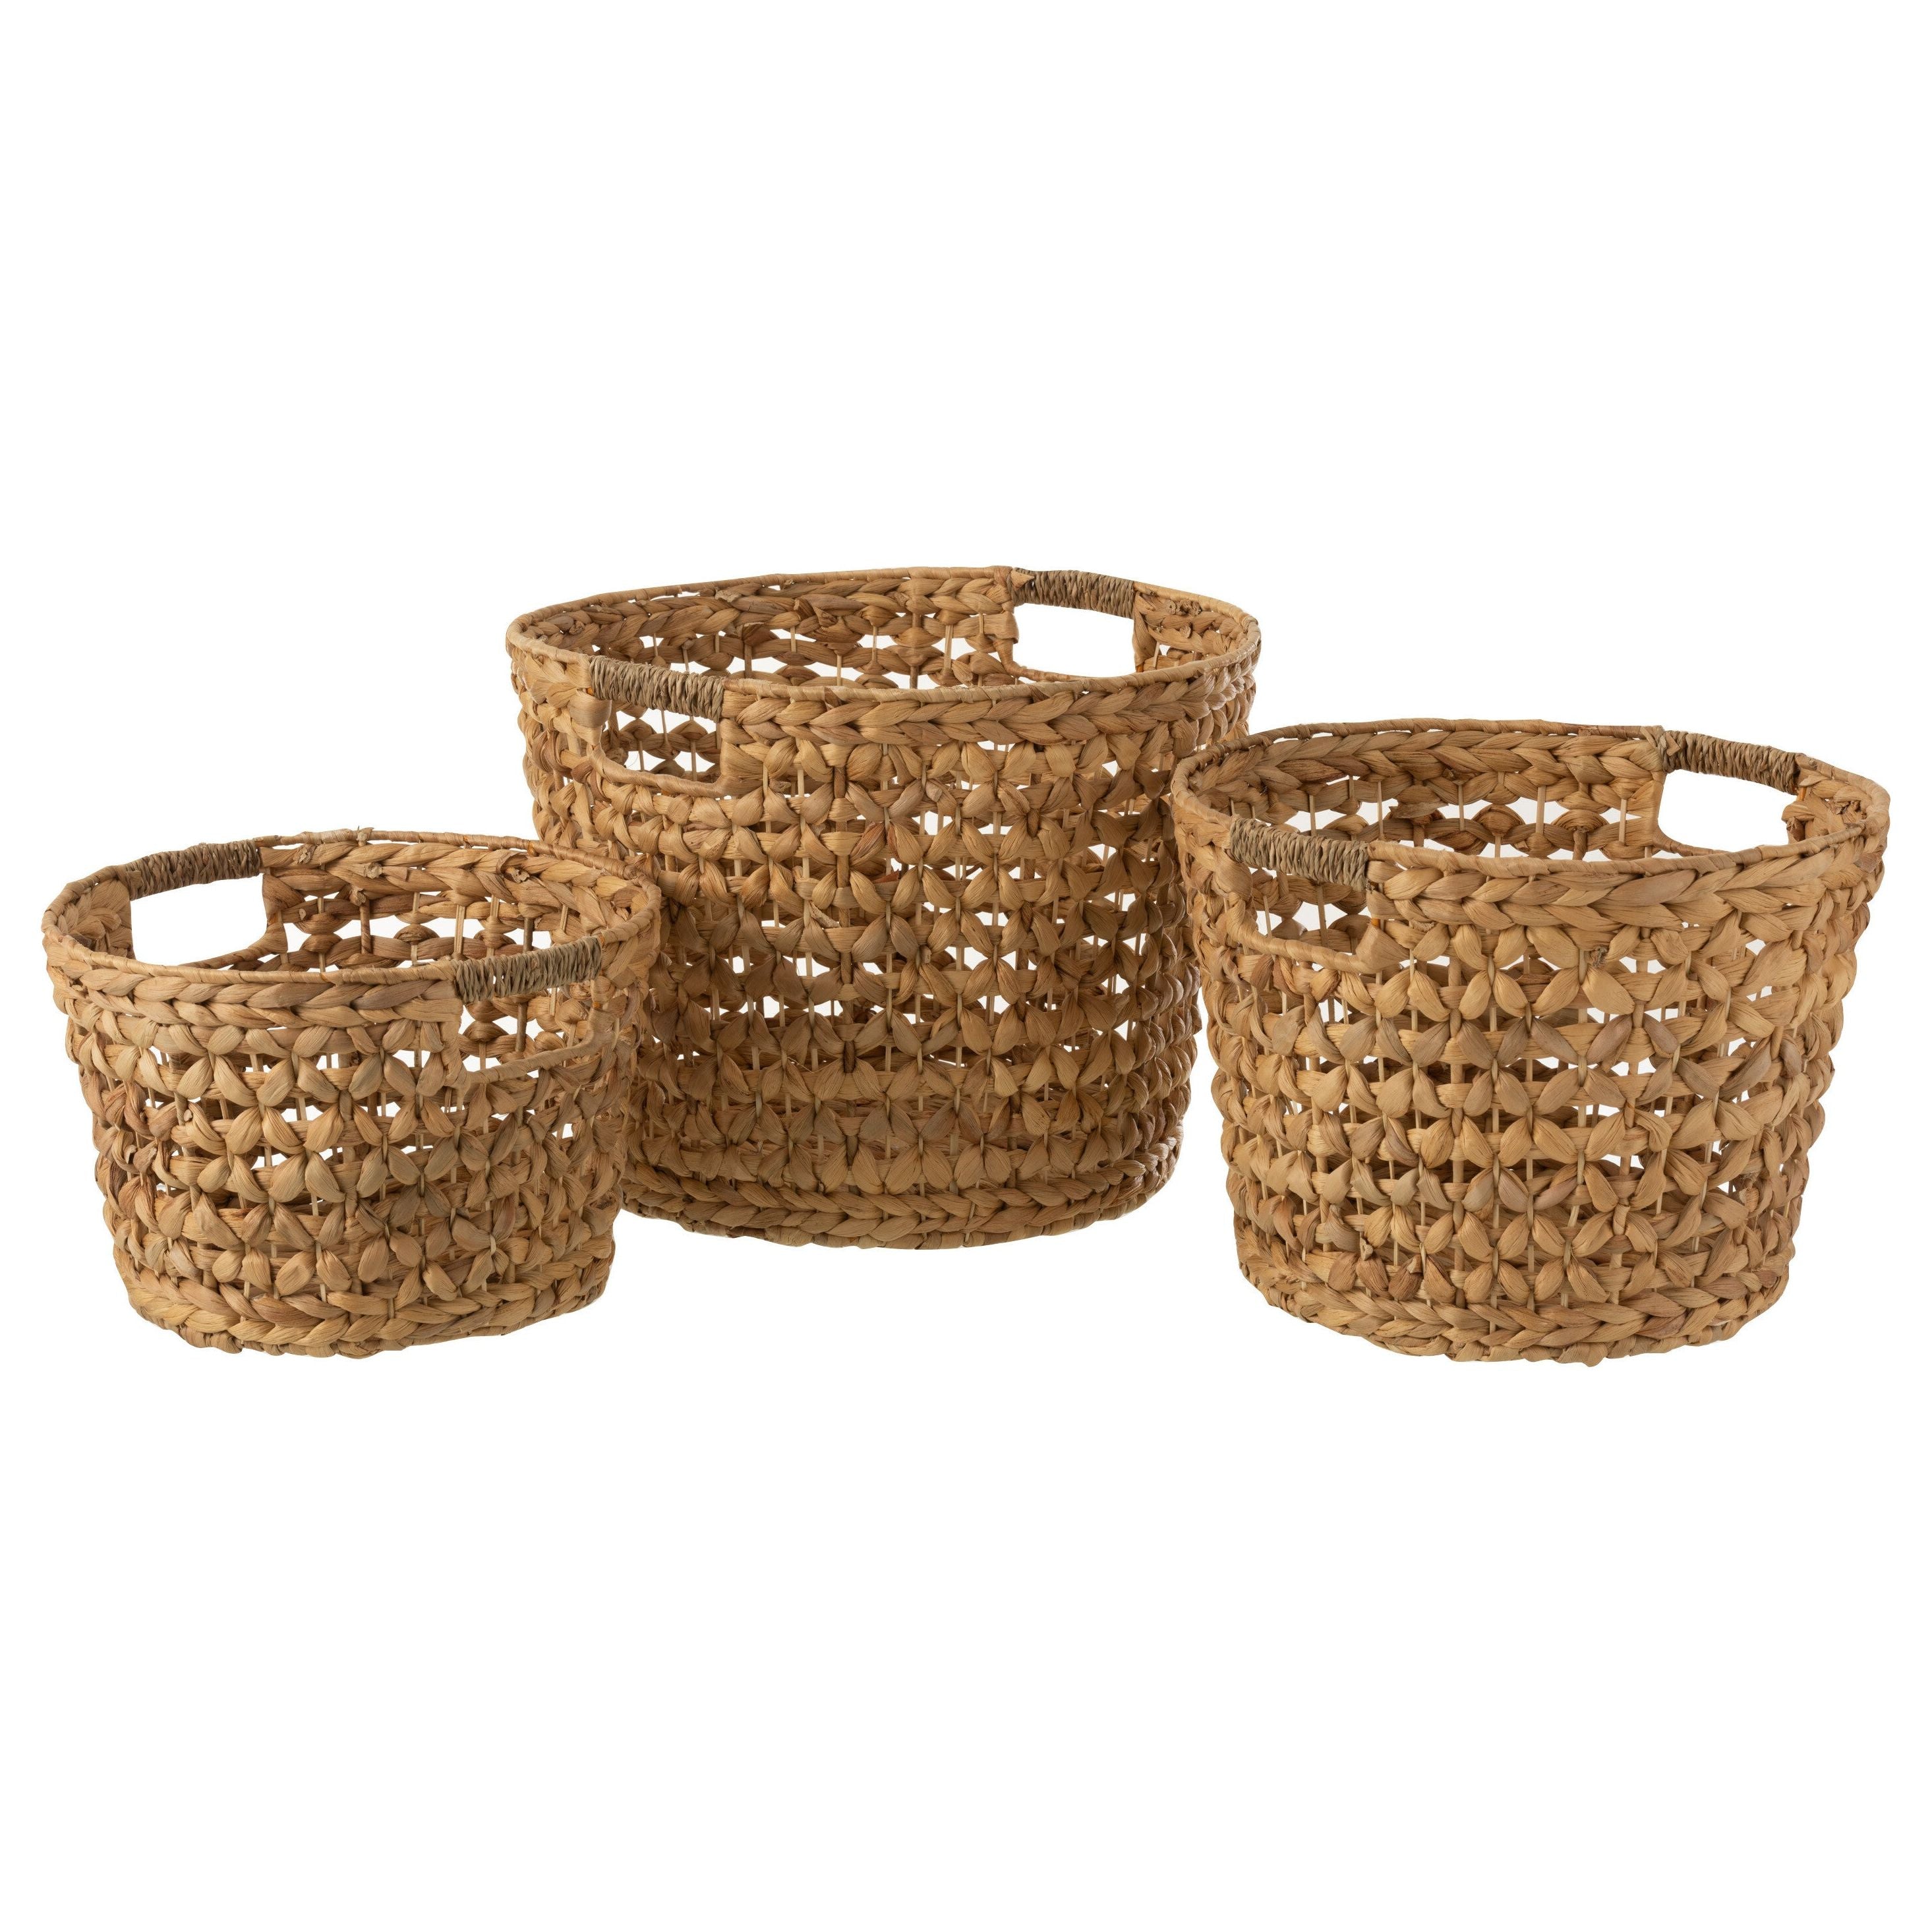 Baskets Water Hyacinth Natural